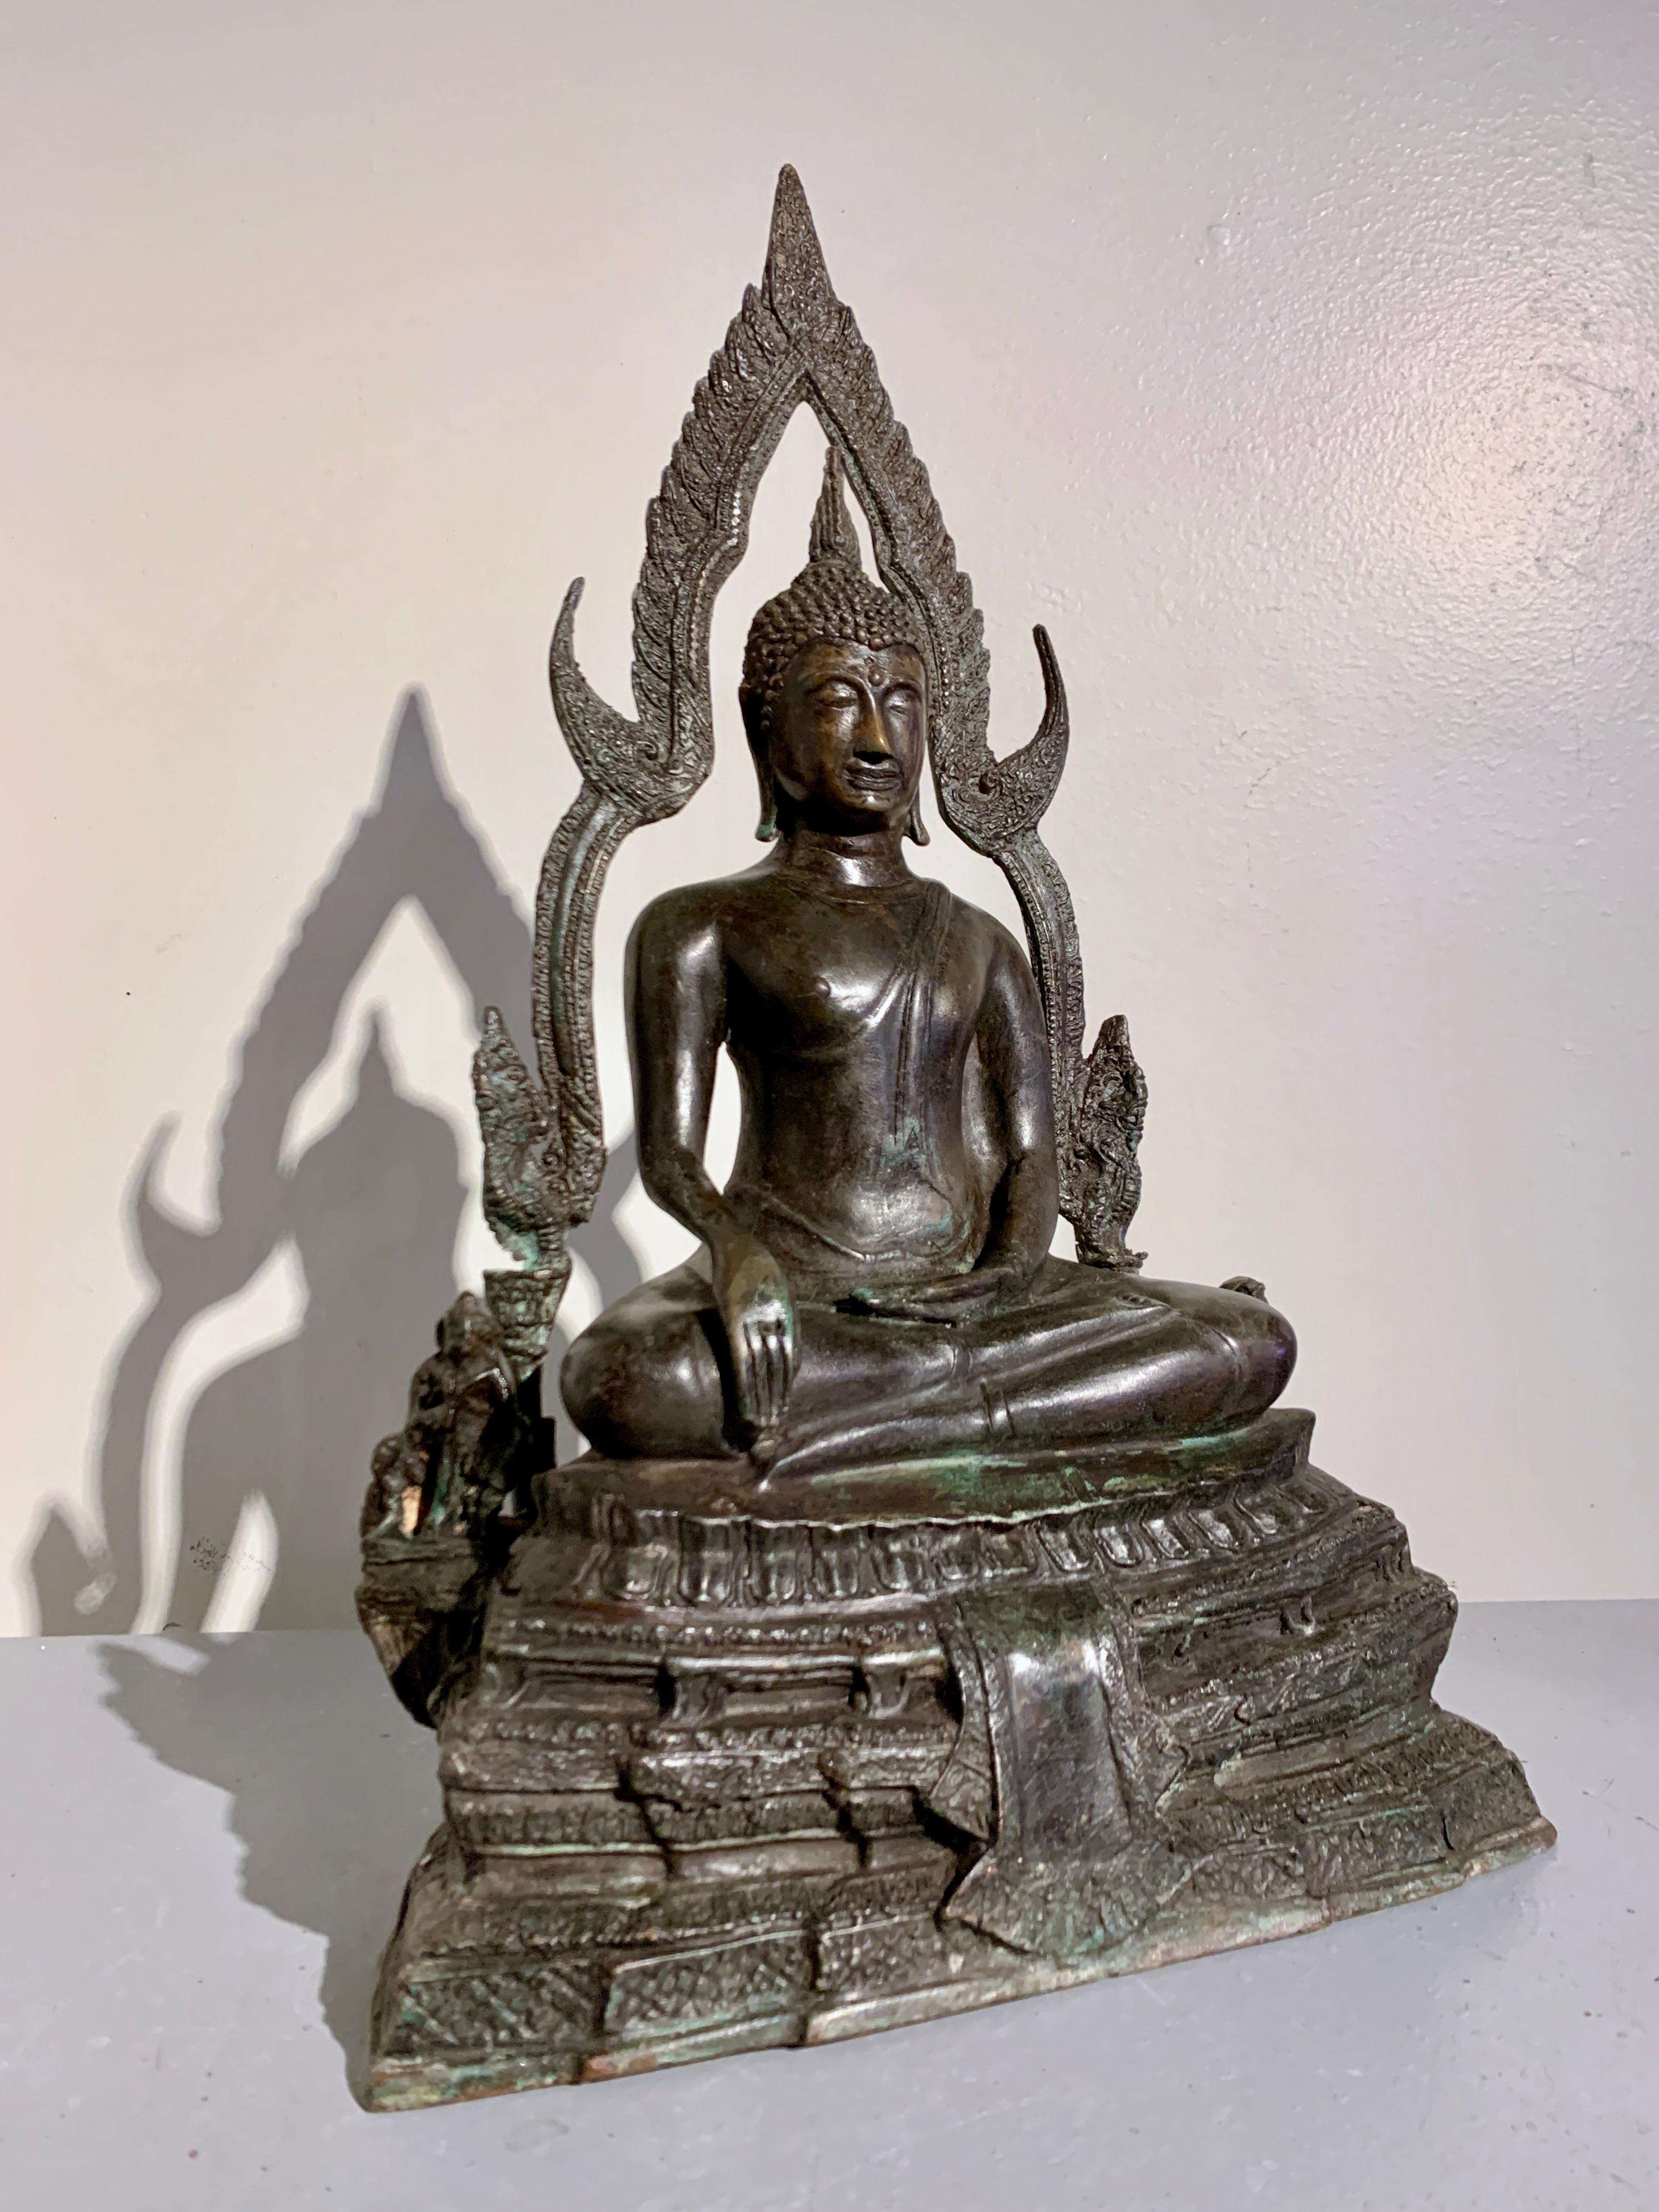 Eine gut gegossene Bronzereproduktion des berühmten goldenen Buddha, bekannt als Para Puttha Chinnarat, im Wat Phra Si Rattana Mahathat, Mitte des 20. Jahrhunderts, Thailand.

Eine originalgetreue Nachbildung des berühmten thailändischen sitzenden